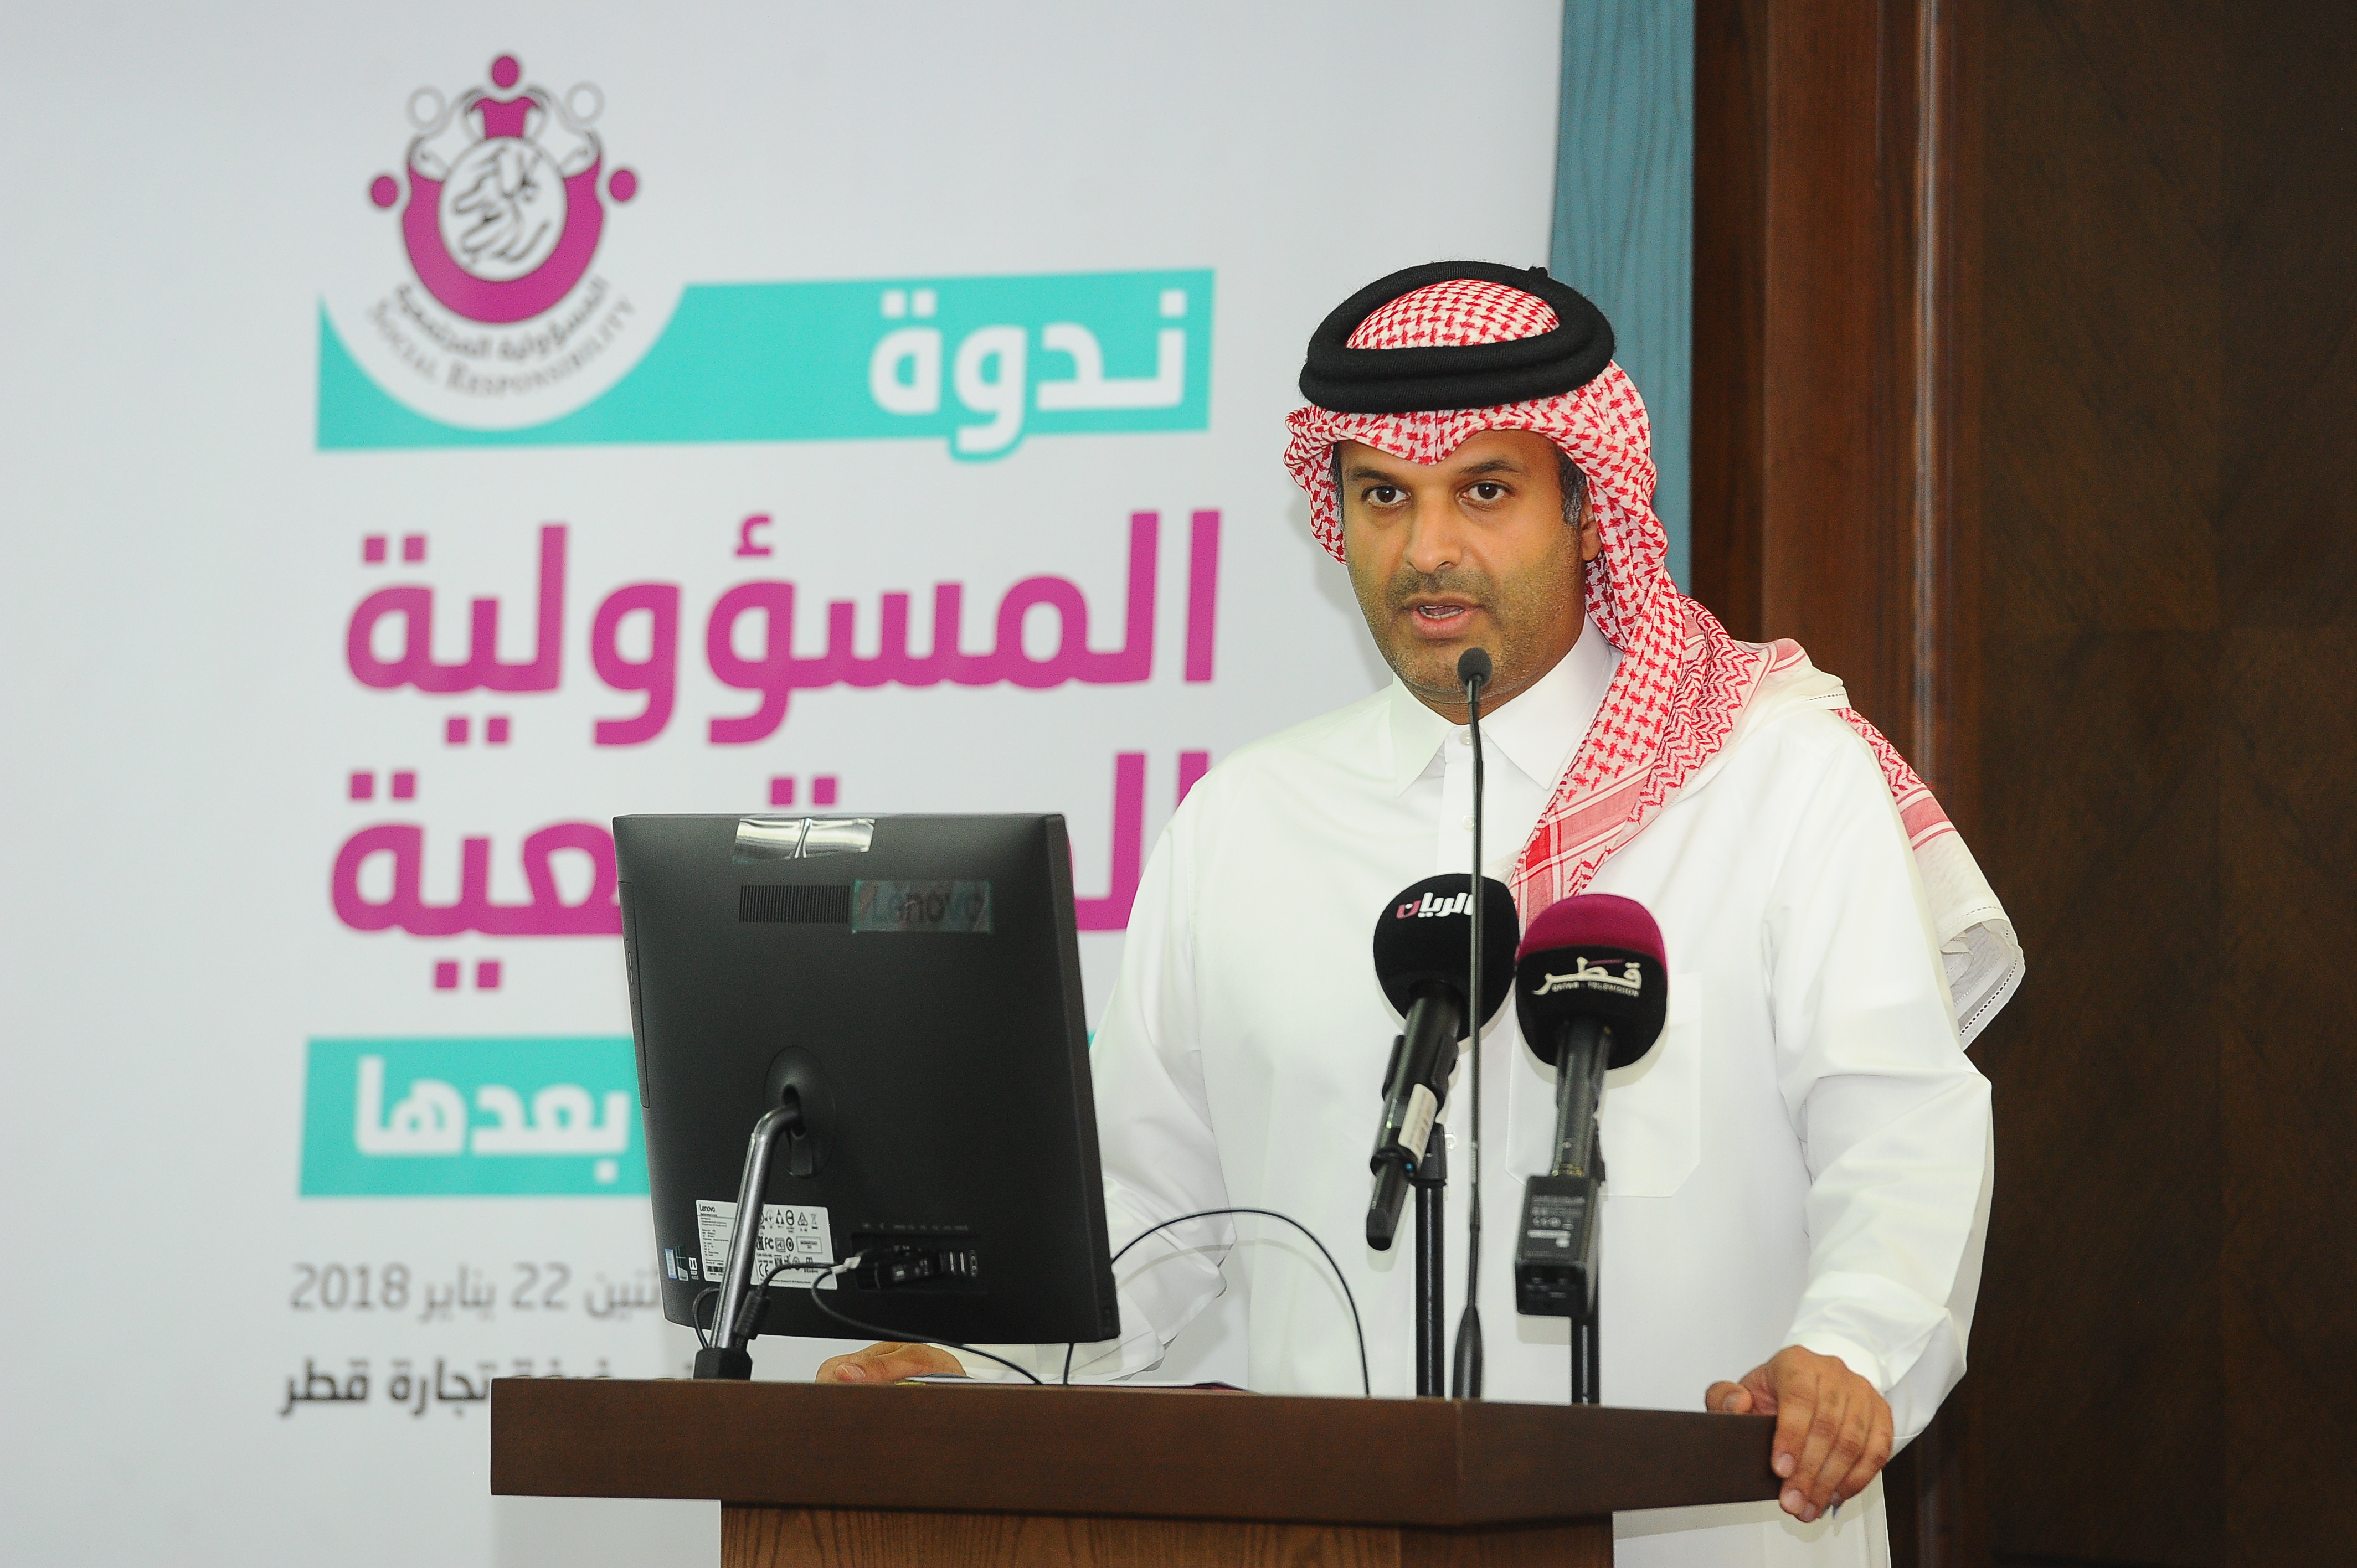 كلمة سعادة الشيخ ثاني بن علي آل ثاني رئيس لجنة المسؤولية المجتمعية